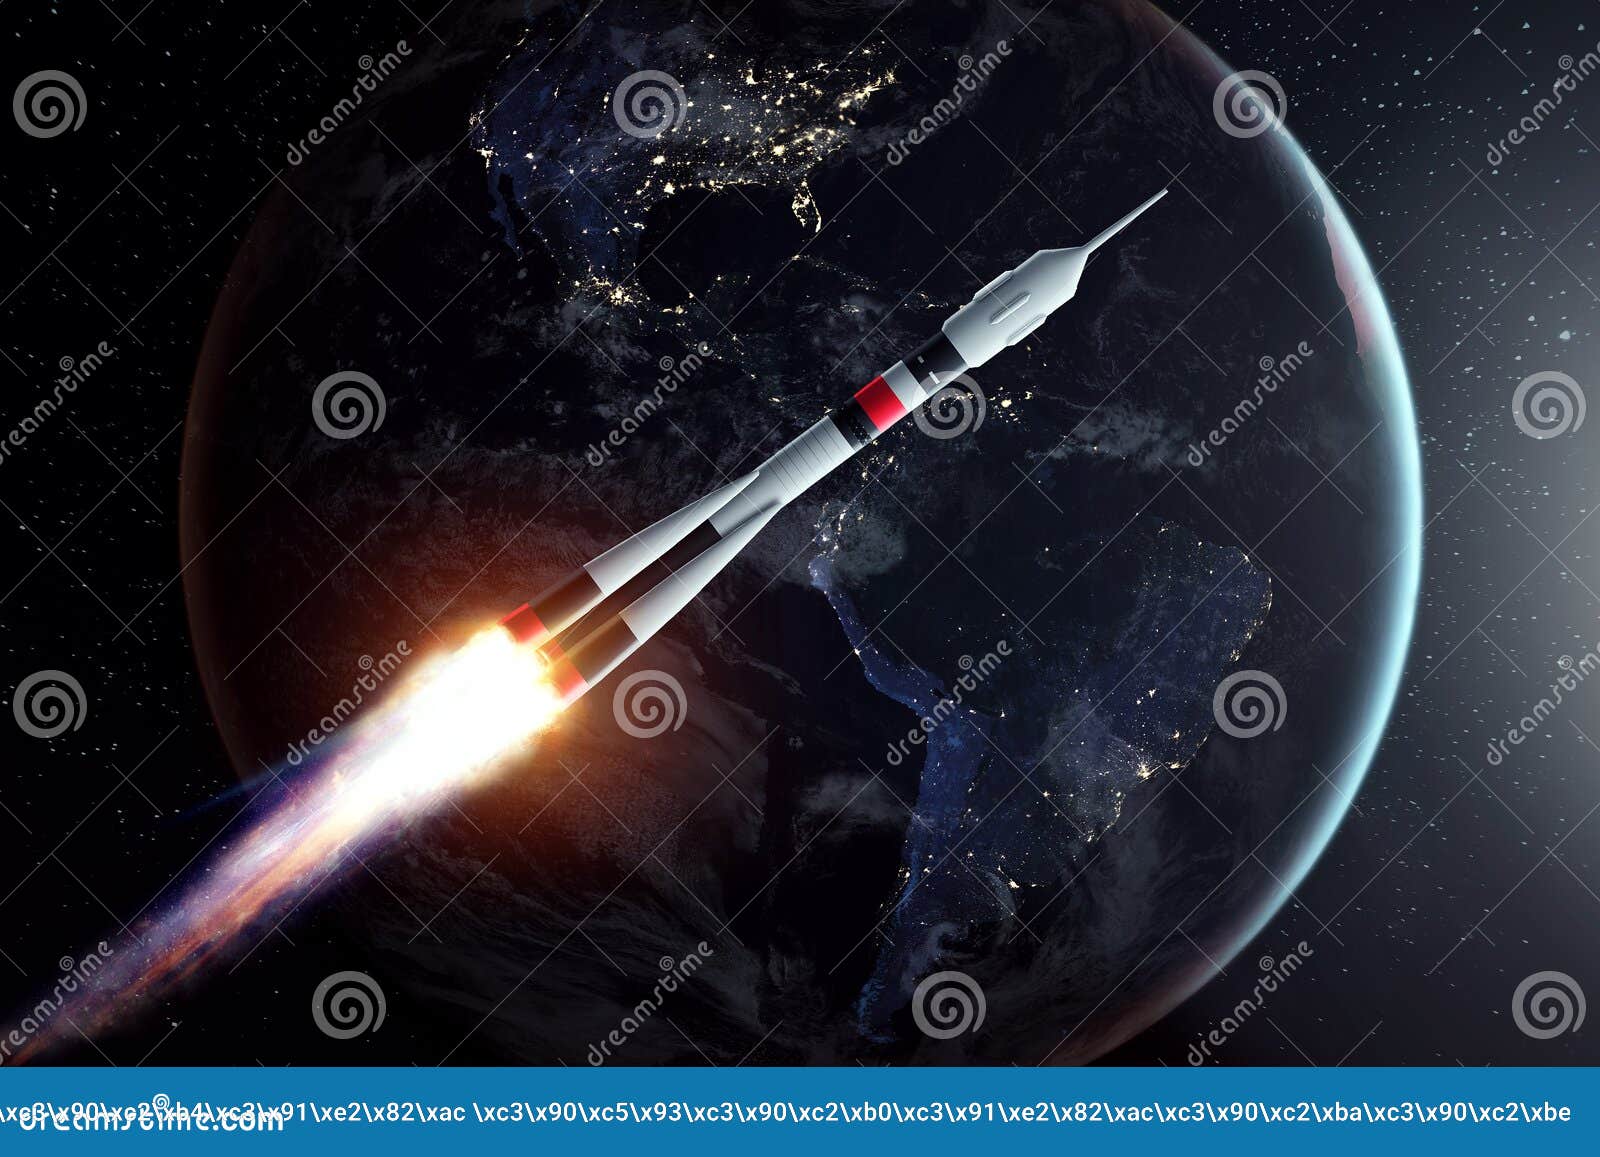 Танец я ракета полетела в космос. Ракета на фоне земли. Картинки космические аппараты летают качественные. Flying Rockets in Space. ONEWEB спутники.